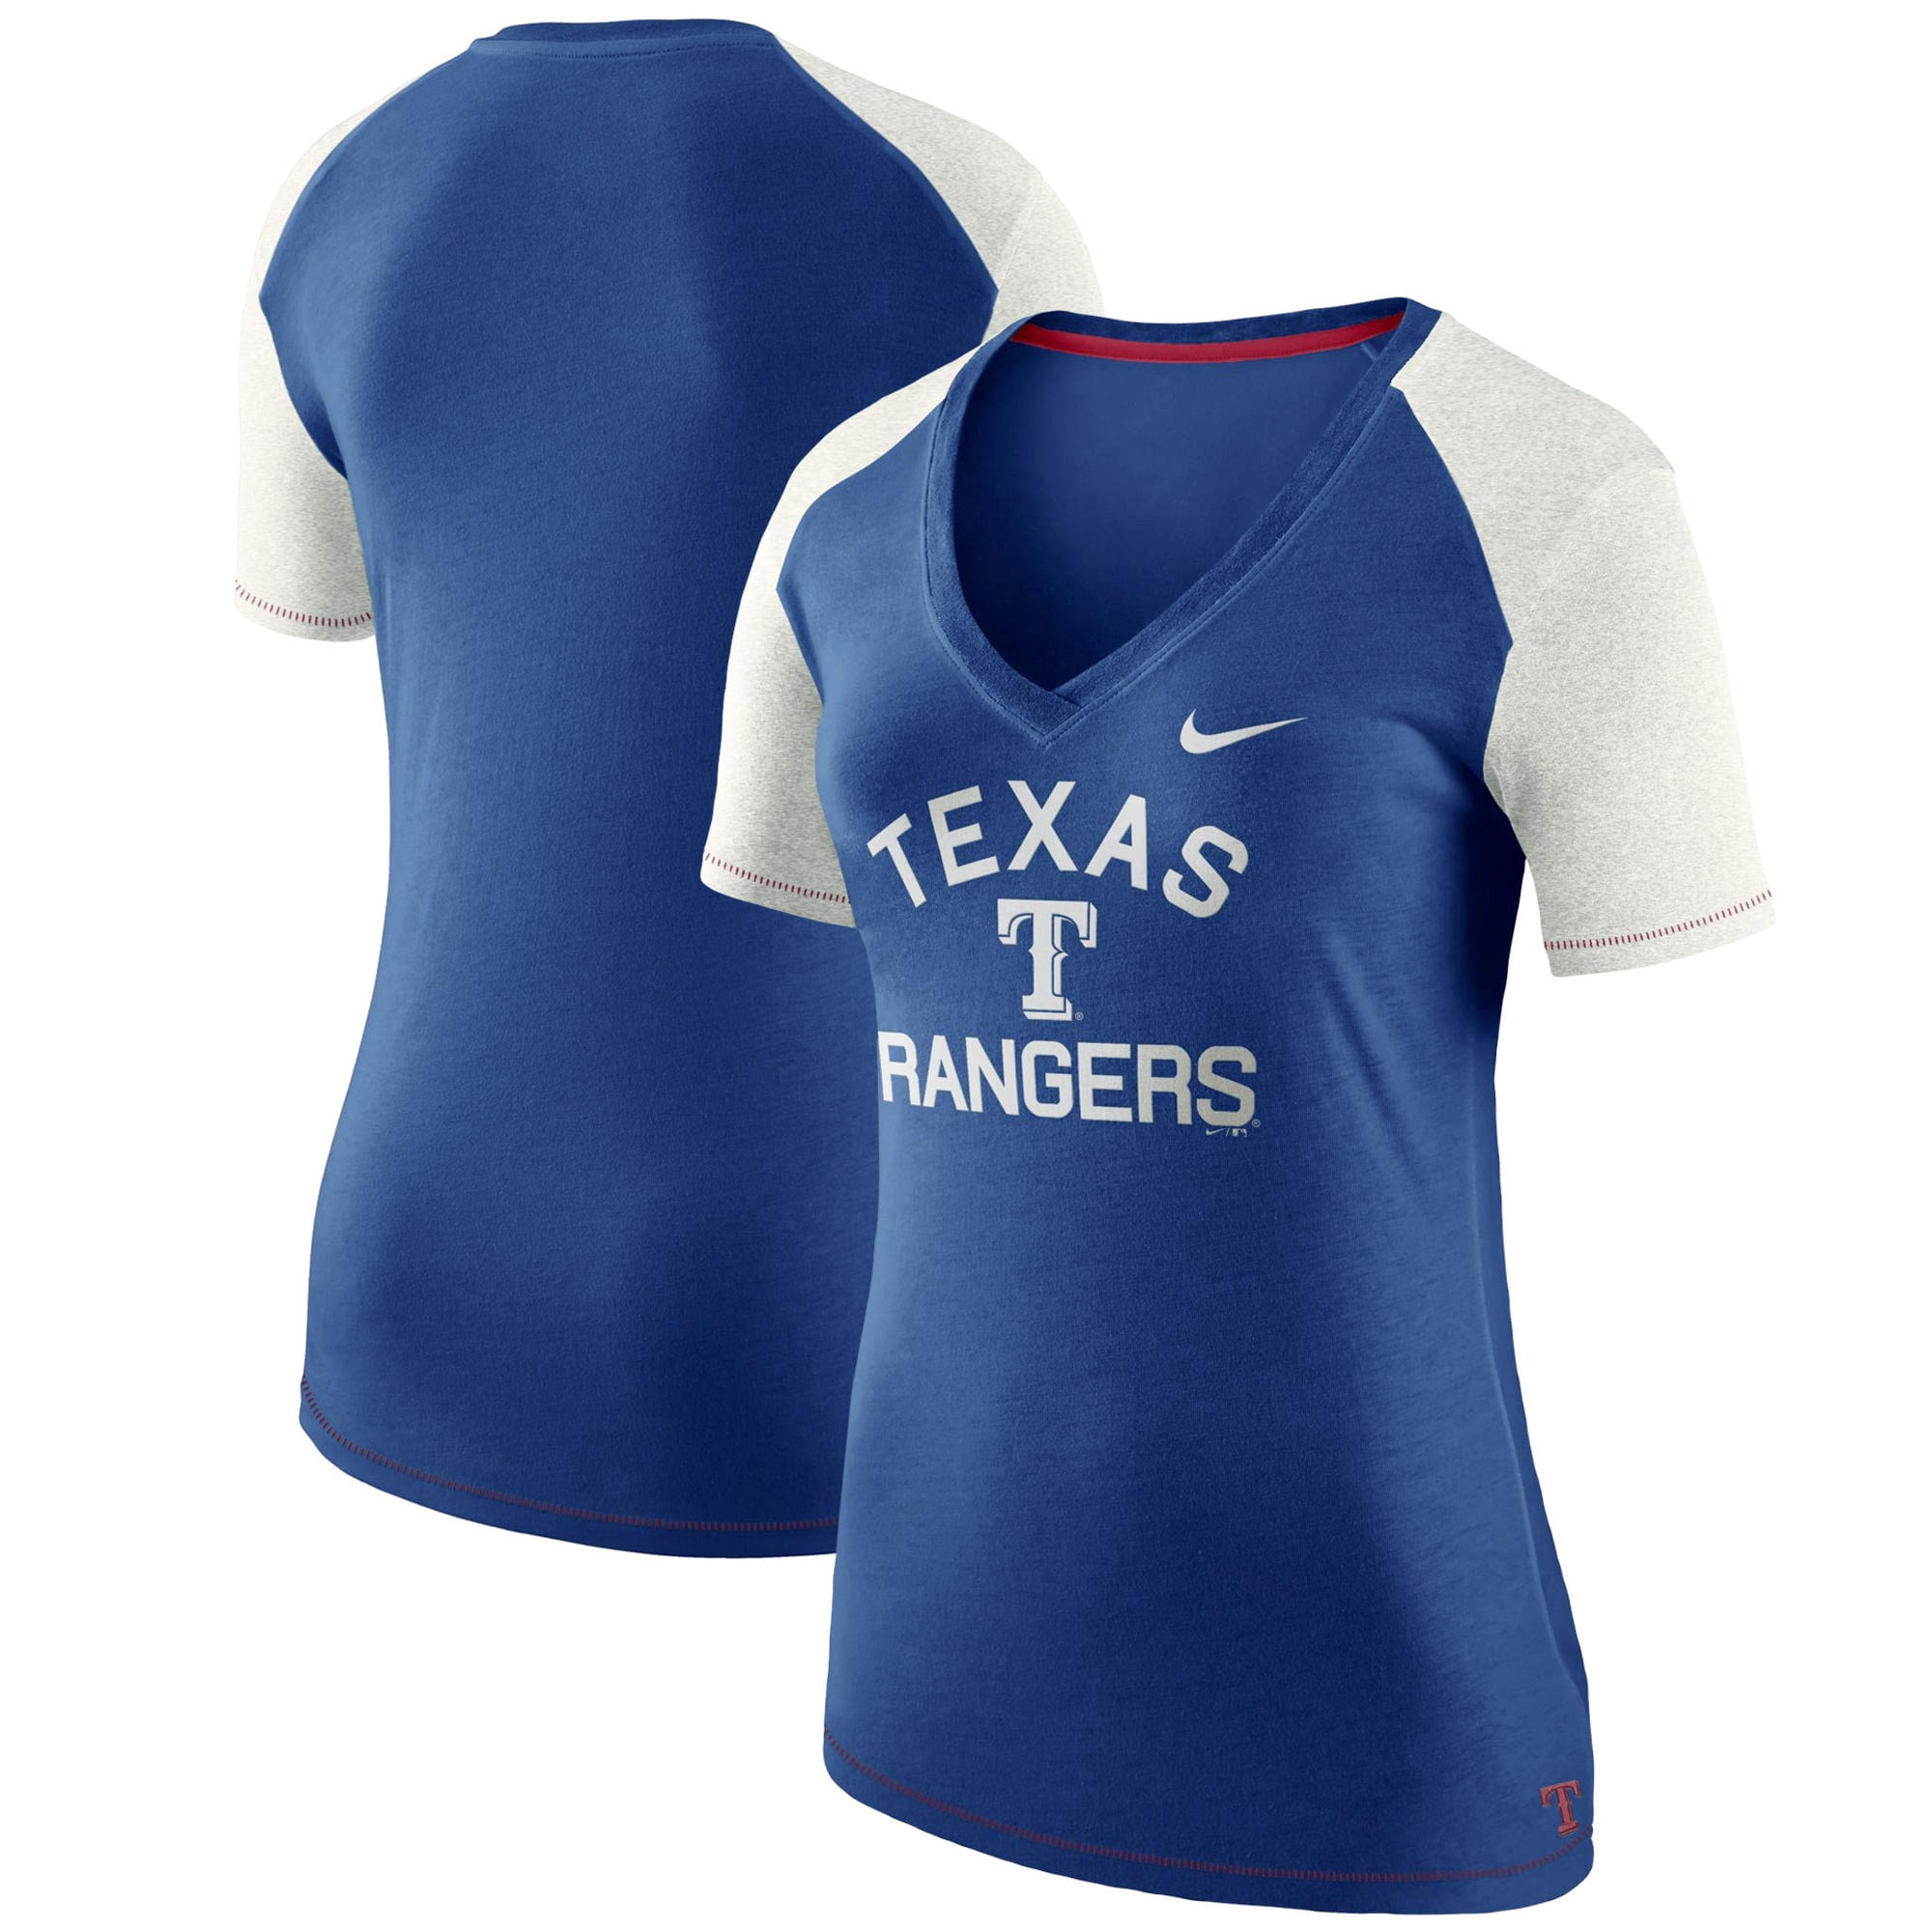 nike women's texas rangers shirts